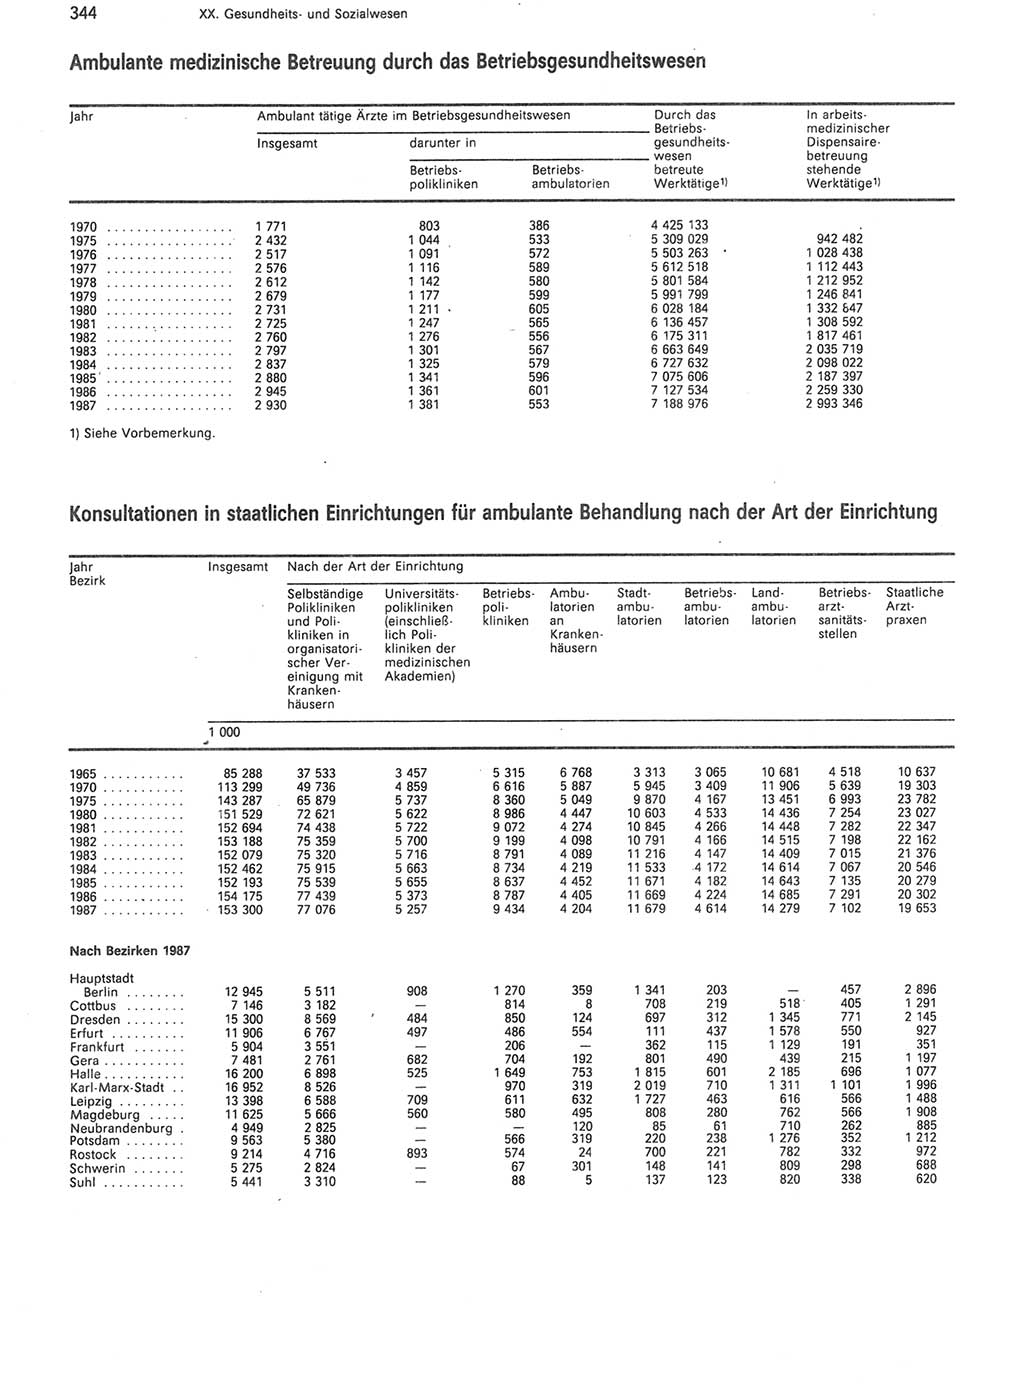 Statistisches Jahrbuch der Deutschen Demokratischen Republik (DDR) 1988, Seite 344 (Stat. Jb. DDR 1988, S. 344)